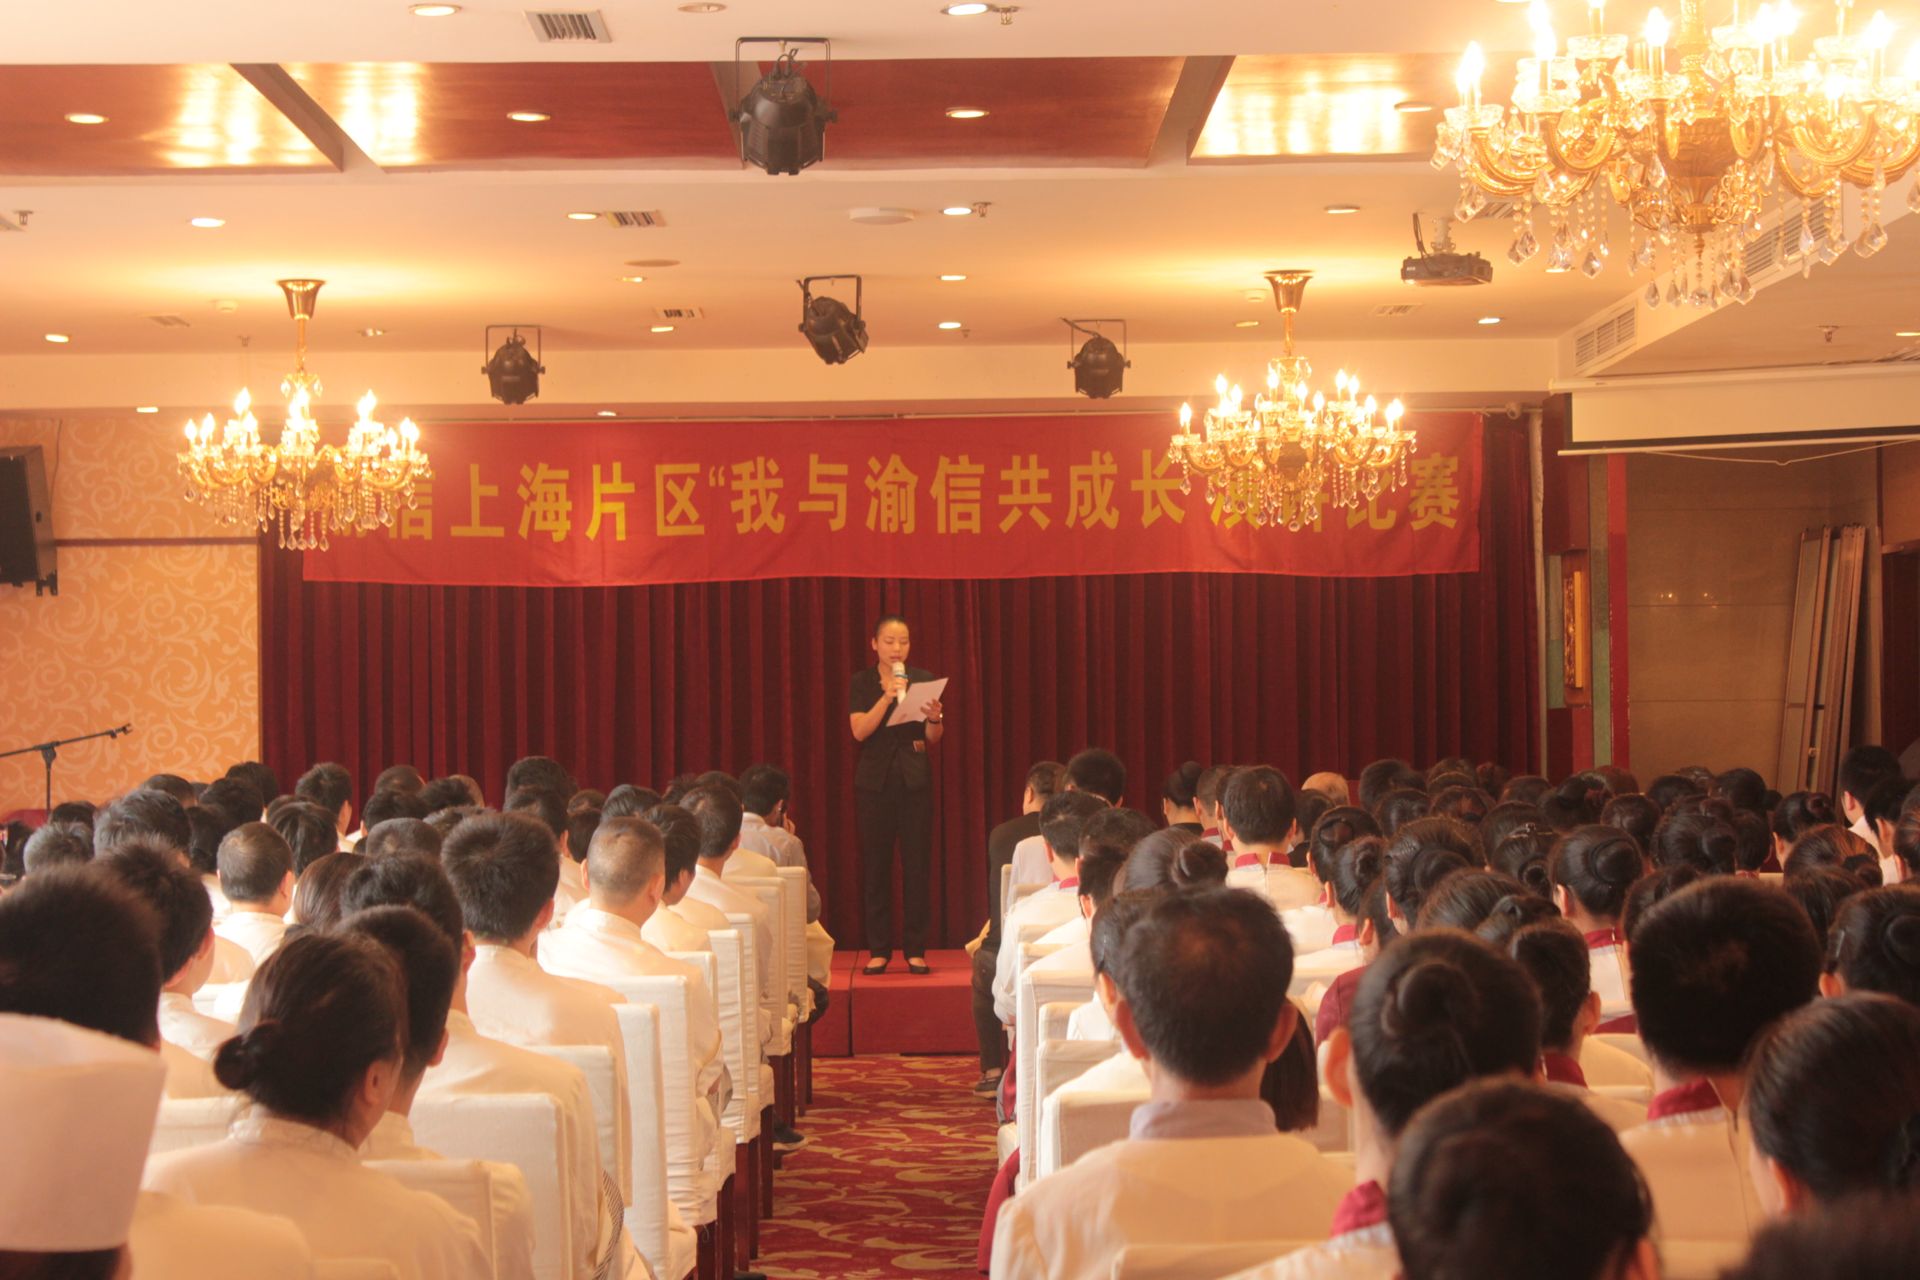 渝信上海地区组织《我与渝信共成长》演讲活动